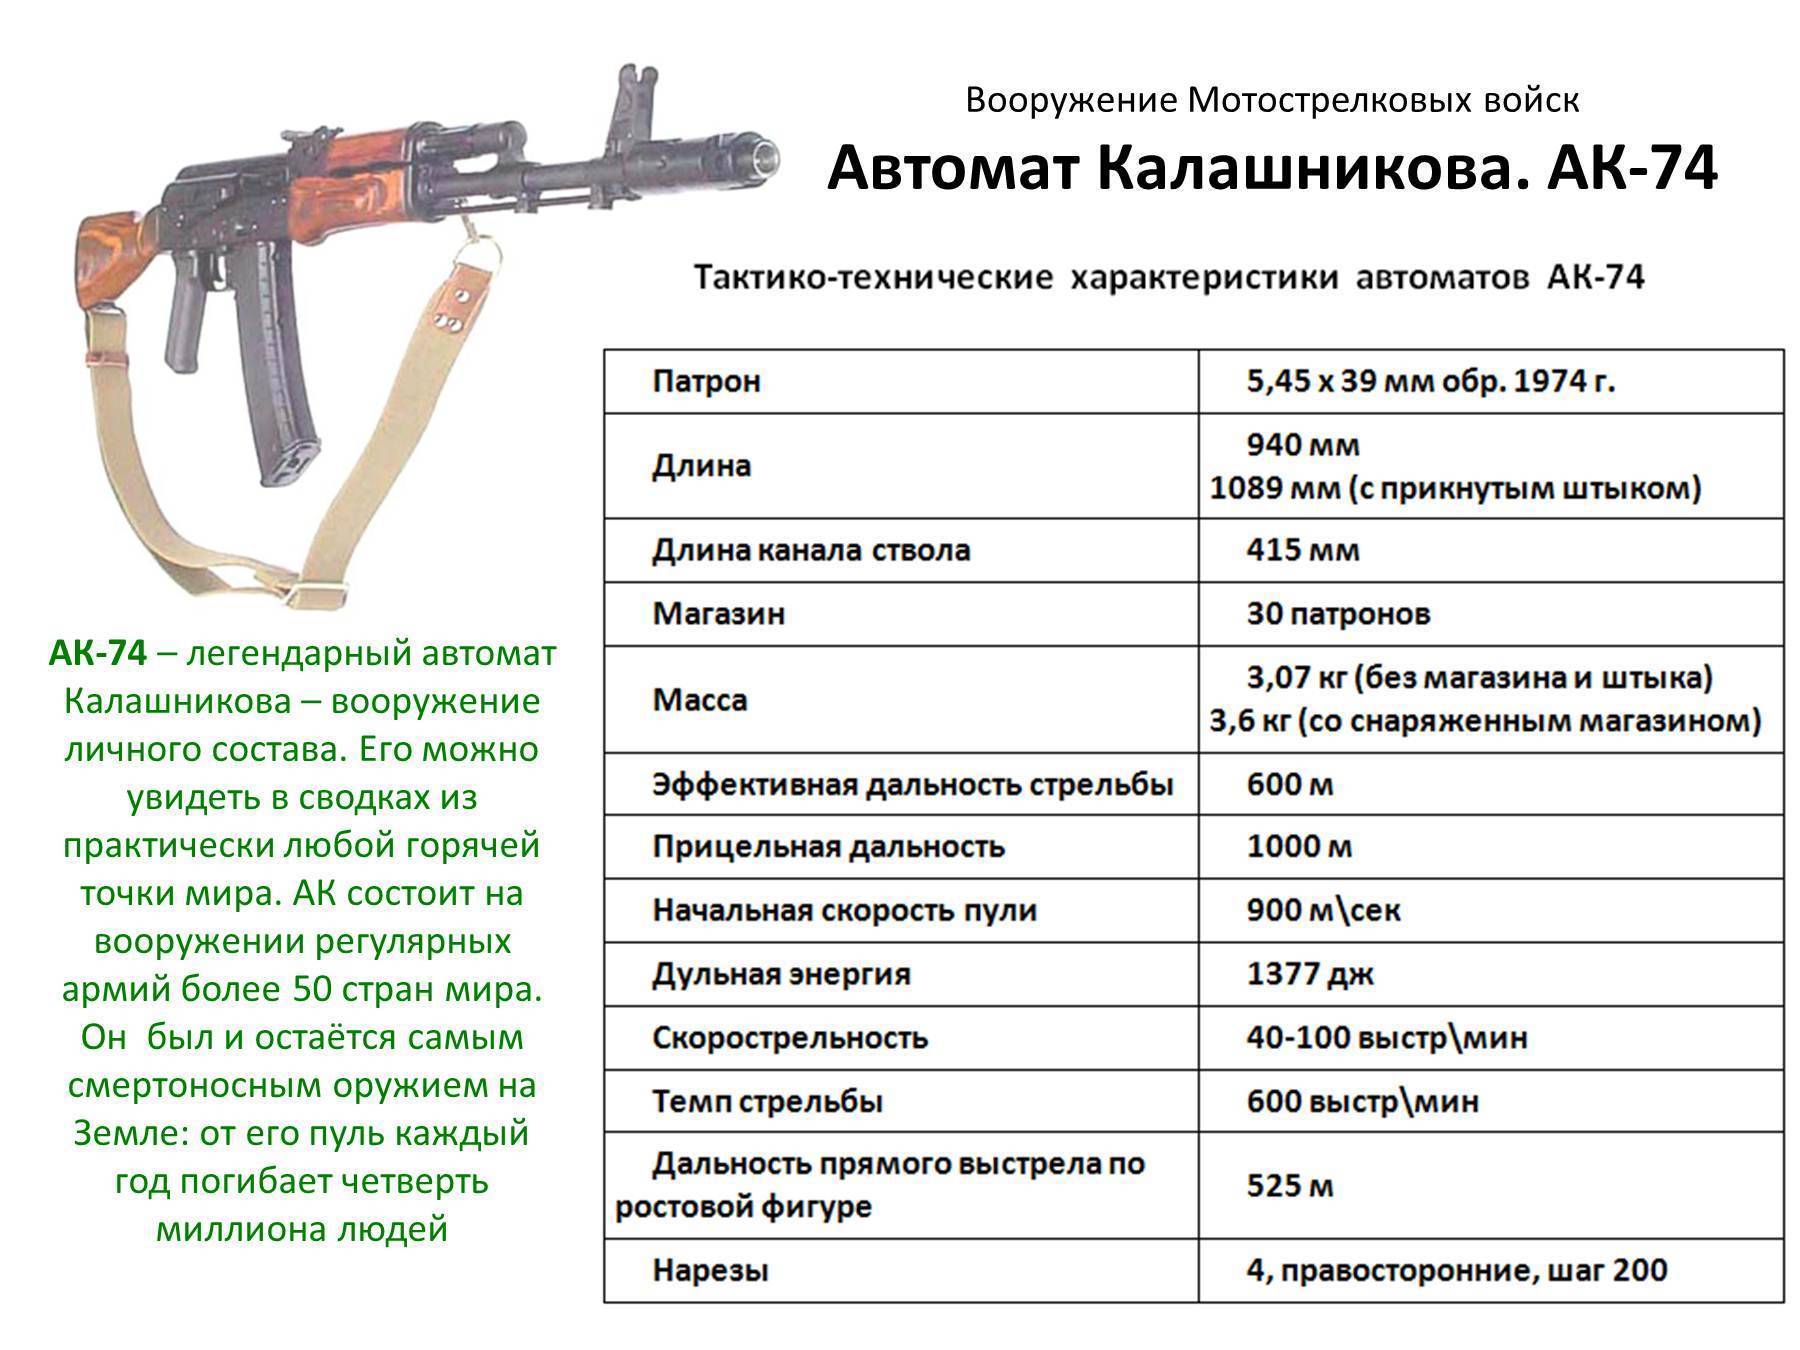 Назначение частей и механизмов 5,45 мм акс-74у